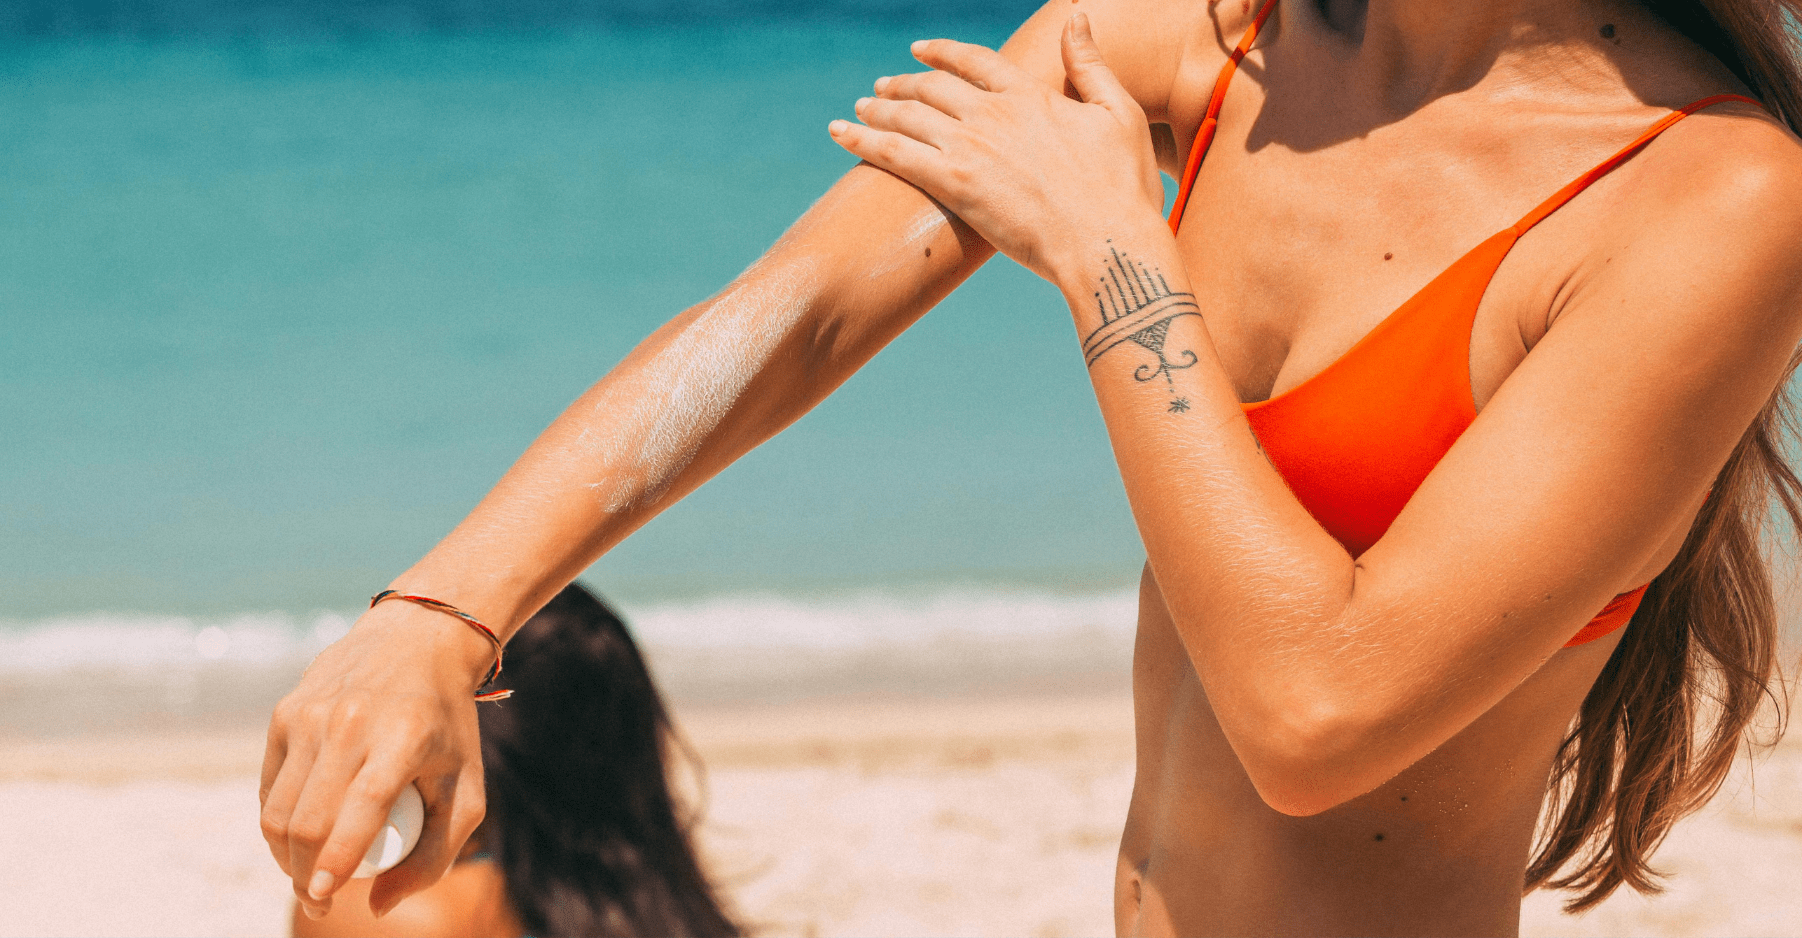 Kobieta ubrana w czerwone bikini smaruje sobie ramię kremem z filtrem. Znajduje się na plaży — w tle widać wodę i piasek oraz inną osobę z długimi włosami.